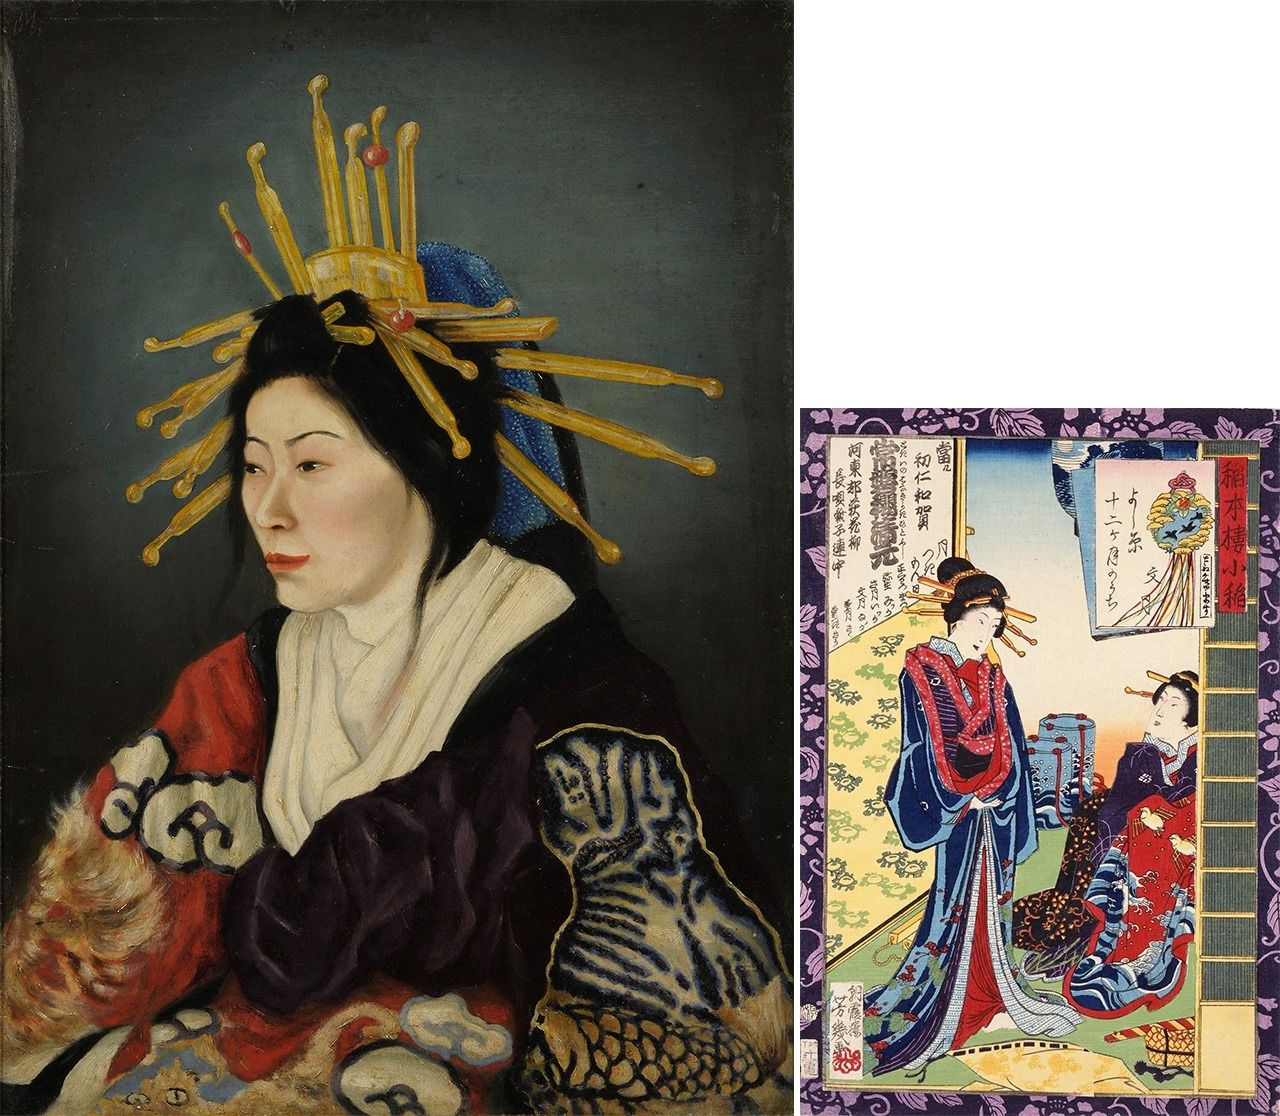 Слева: Такахаси Юити, «Ойран», 1872 г. (с разрешения Токийского университета искусств); справа: гравюра укиё-э авторства Отиай Ёсиику представляет собой изображение той же женщины и создана всего на три года раньше (с разрешения музея Хаги Урагами, префектура Ямагути)